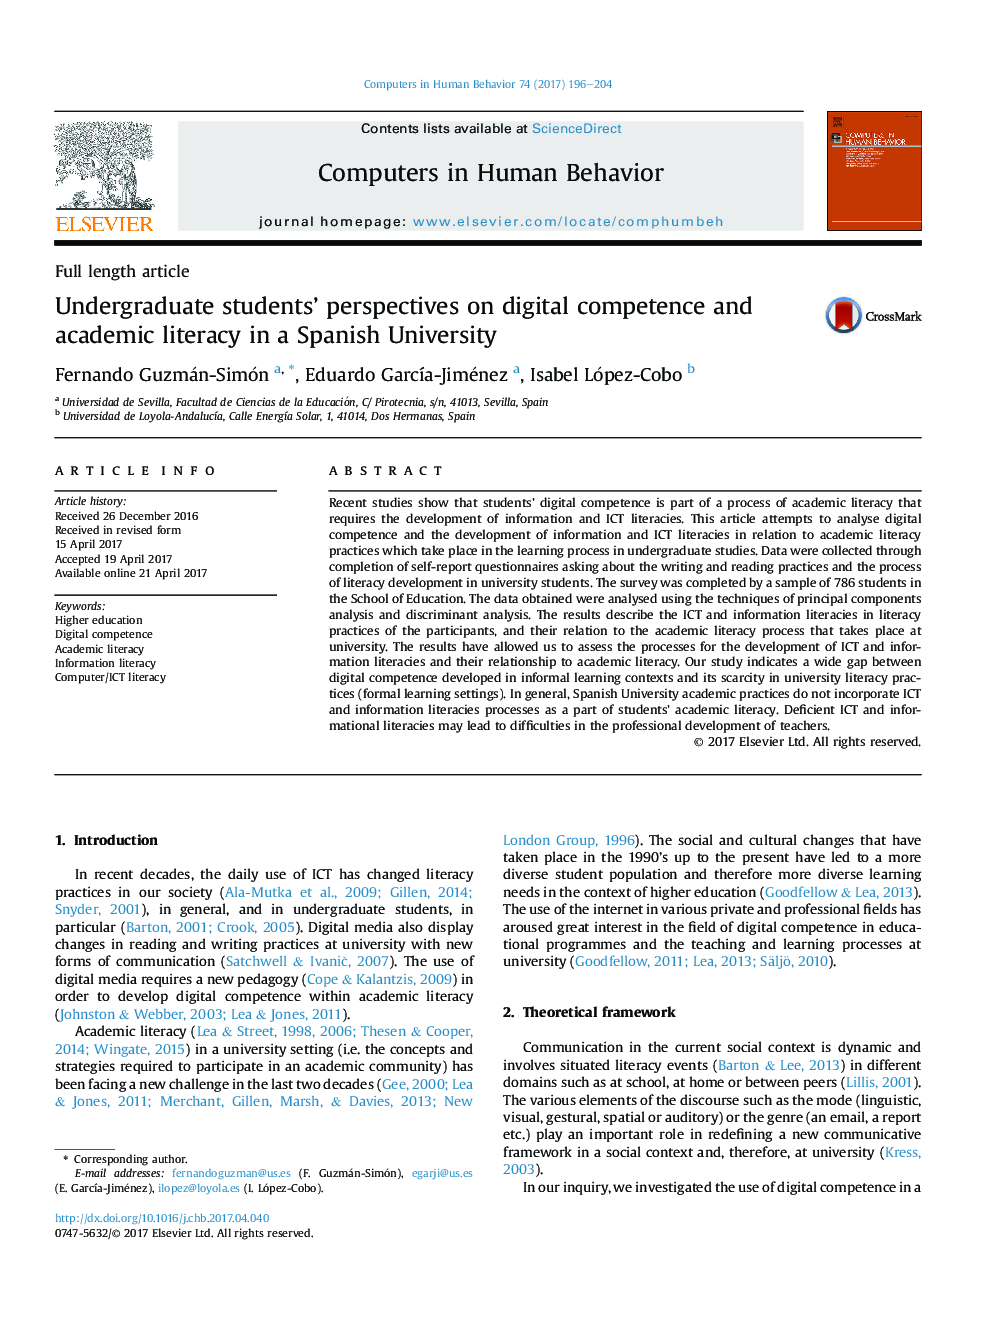 دیدگاه دانشجویان در مورد مهارت های دیجیتالی و سوادآموزی دانشگاهی در یک دانشگاه اسپانیایی 